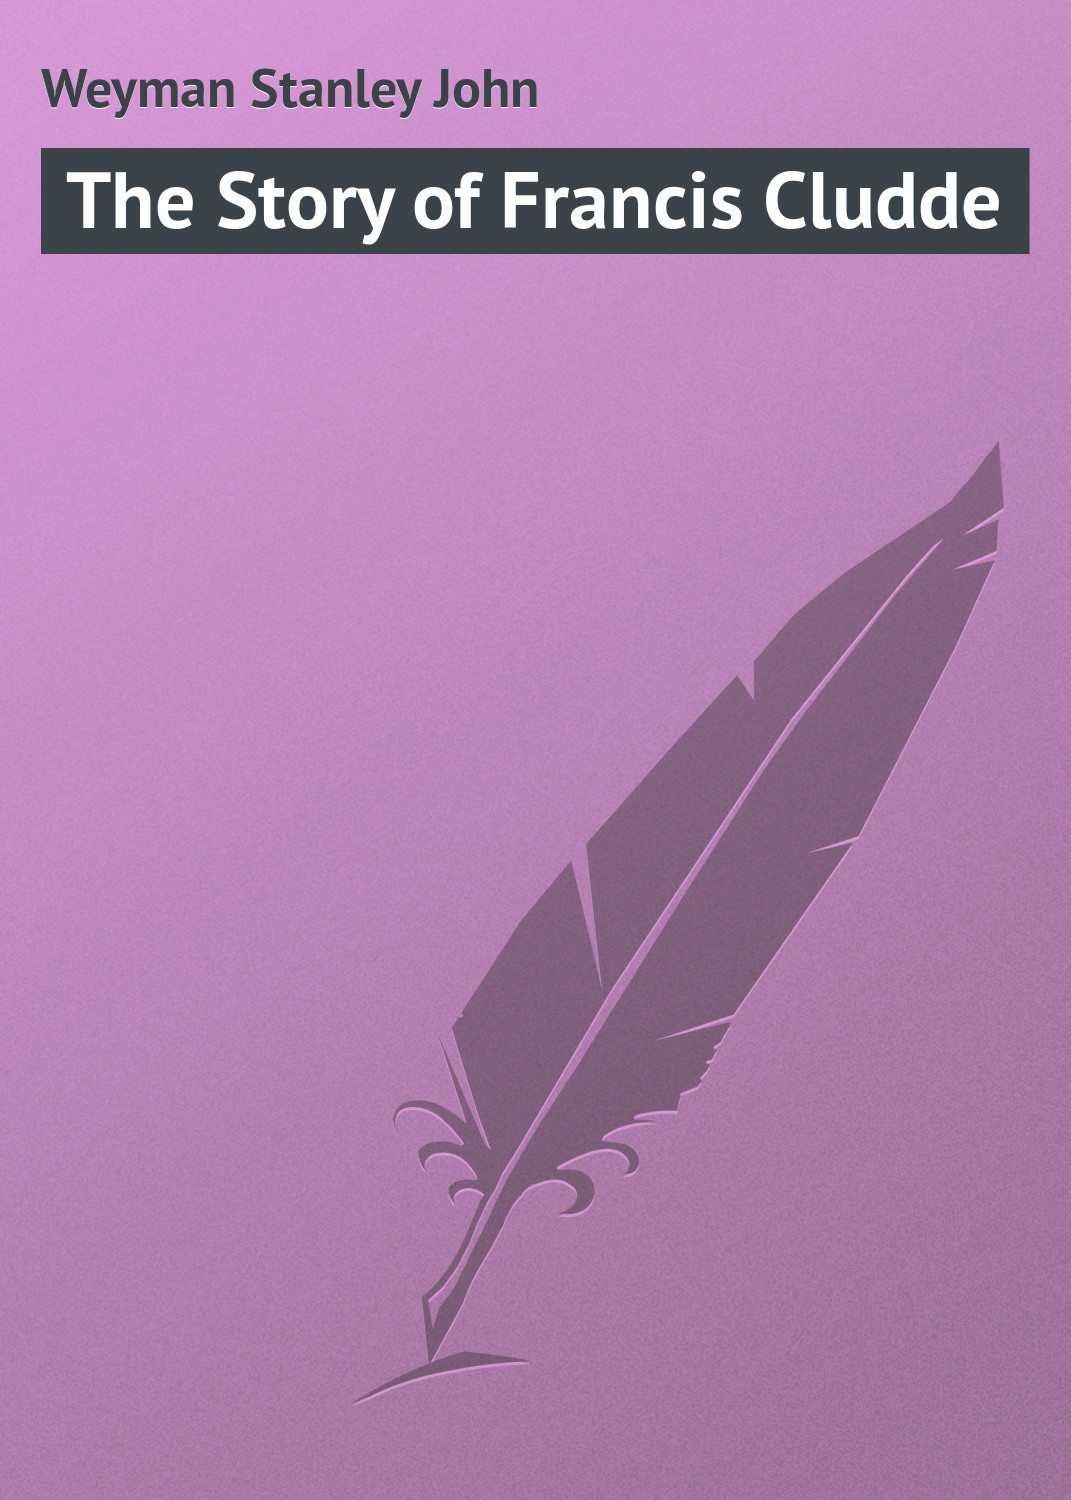 Книга The Story of Francis Cludde из серии , созданная Stanley Weyman, может относится к жанру Зарубежная классика, Иностранные языки. Стоимость электронной книги The Story of Francis Cludde с идентификатором 23152891 составляет 5.99 руб.